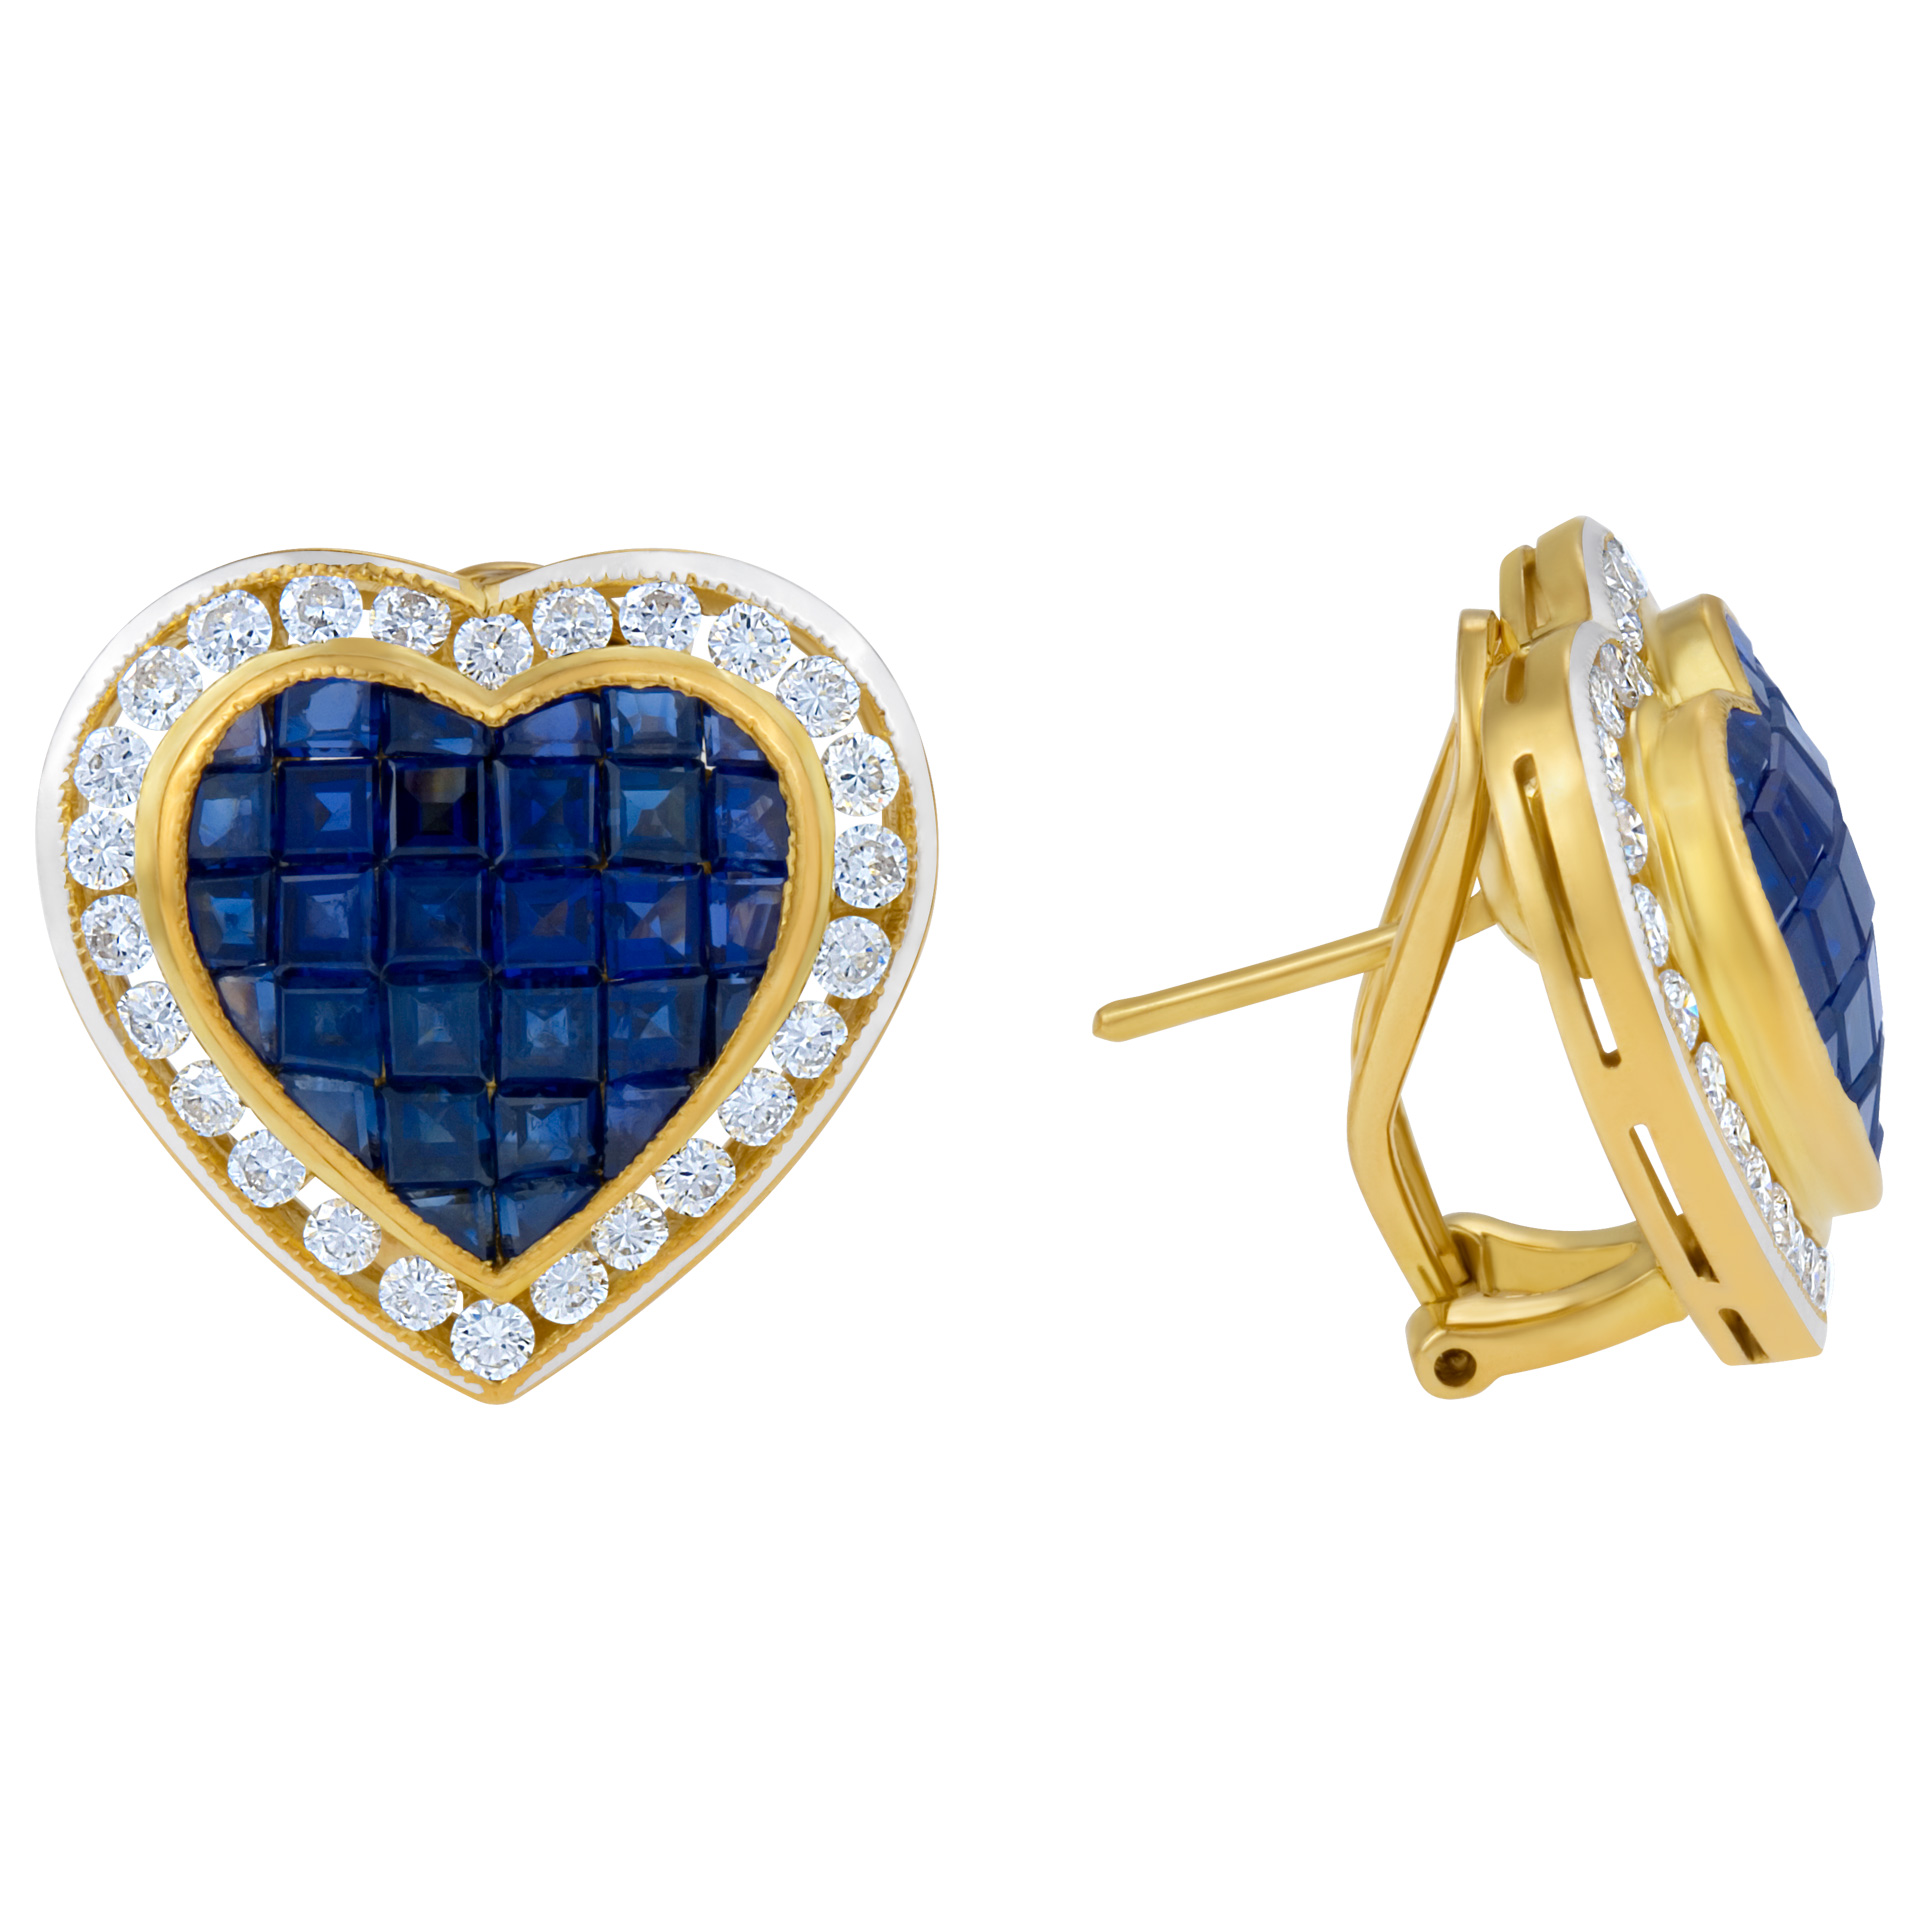 Heart shaped sapphire & diamond earrings in 18k image 1